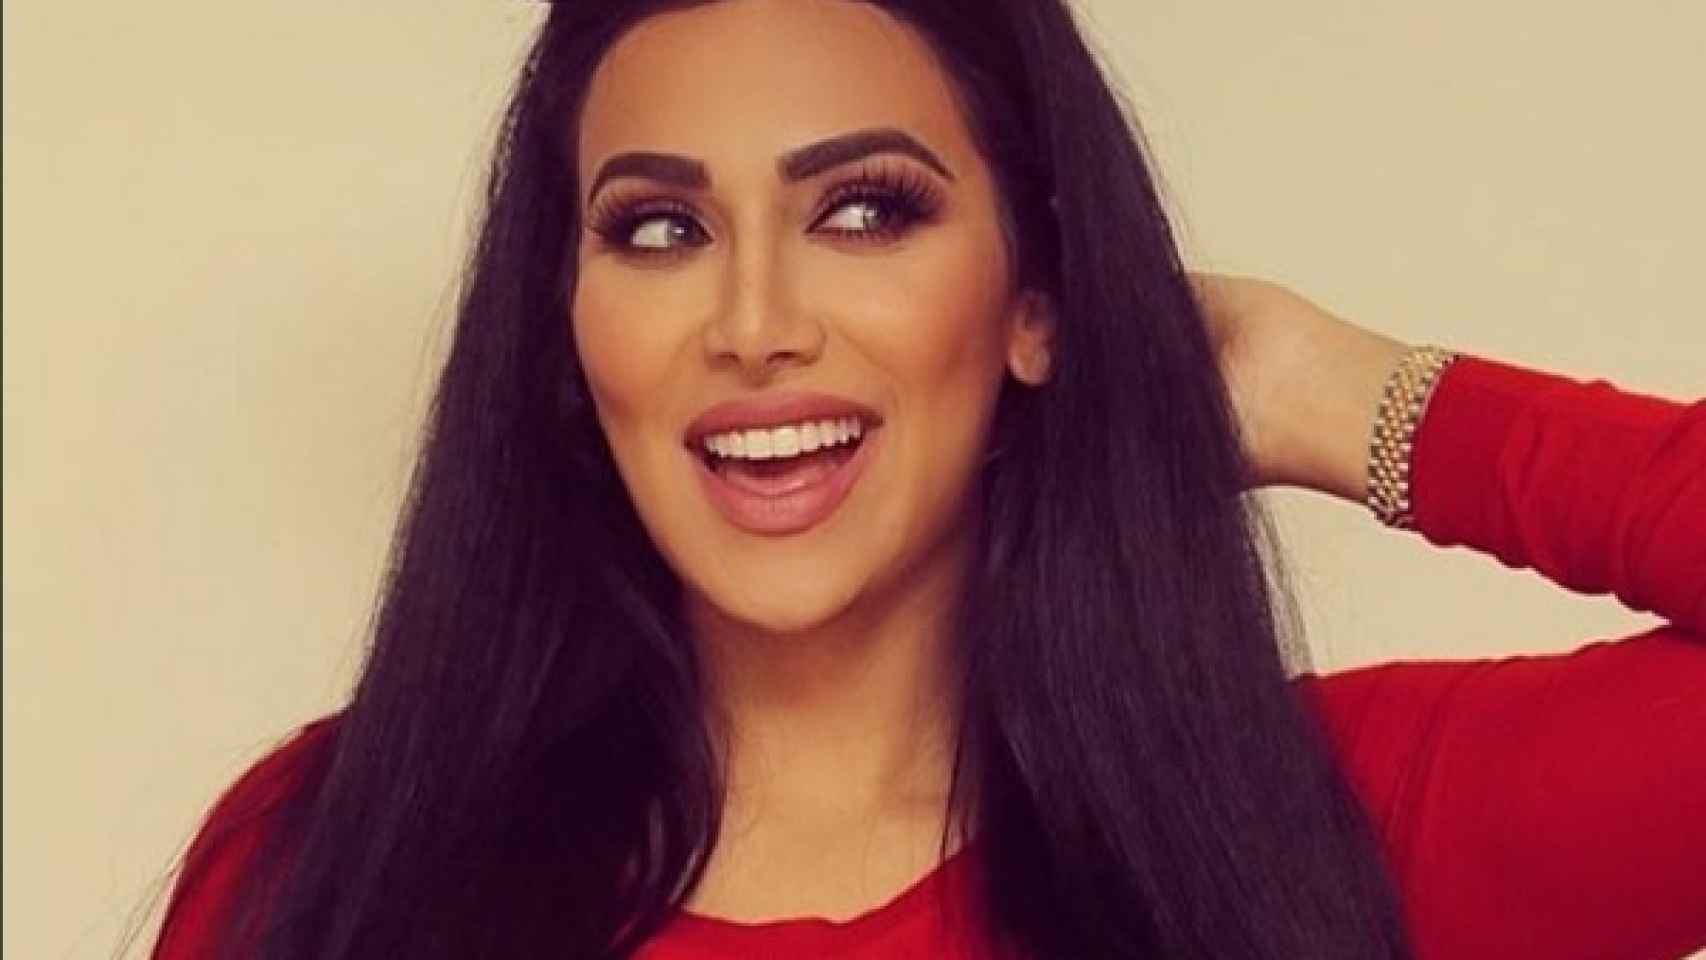 Huda Kattan aprovecha su parecido con Kim Kardashian